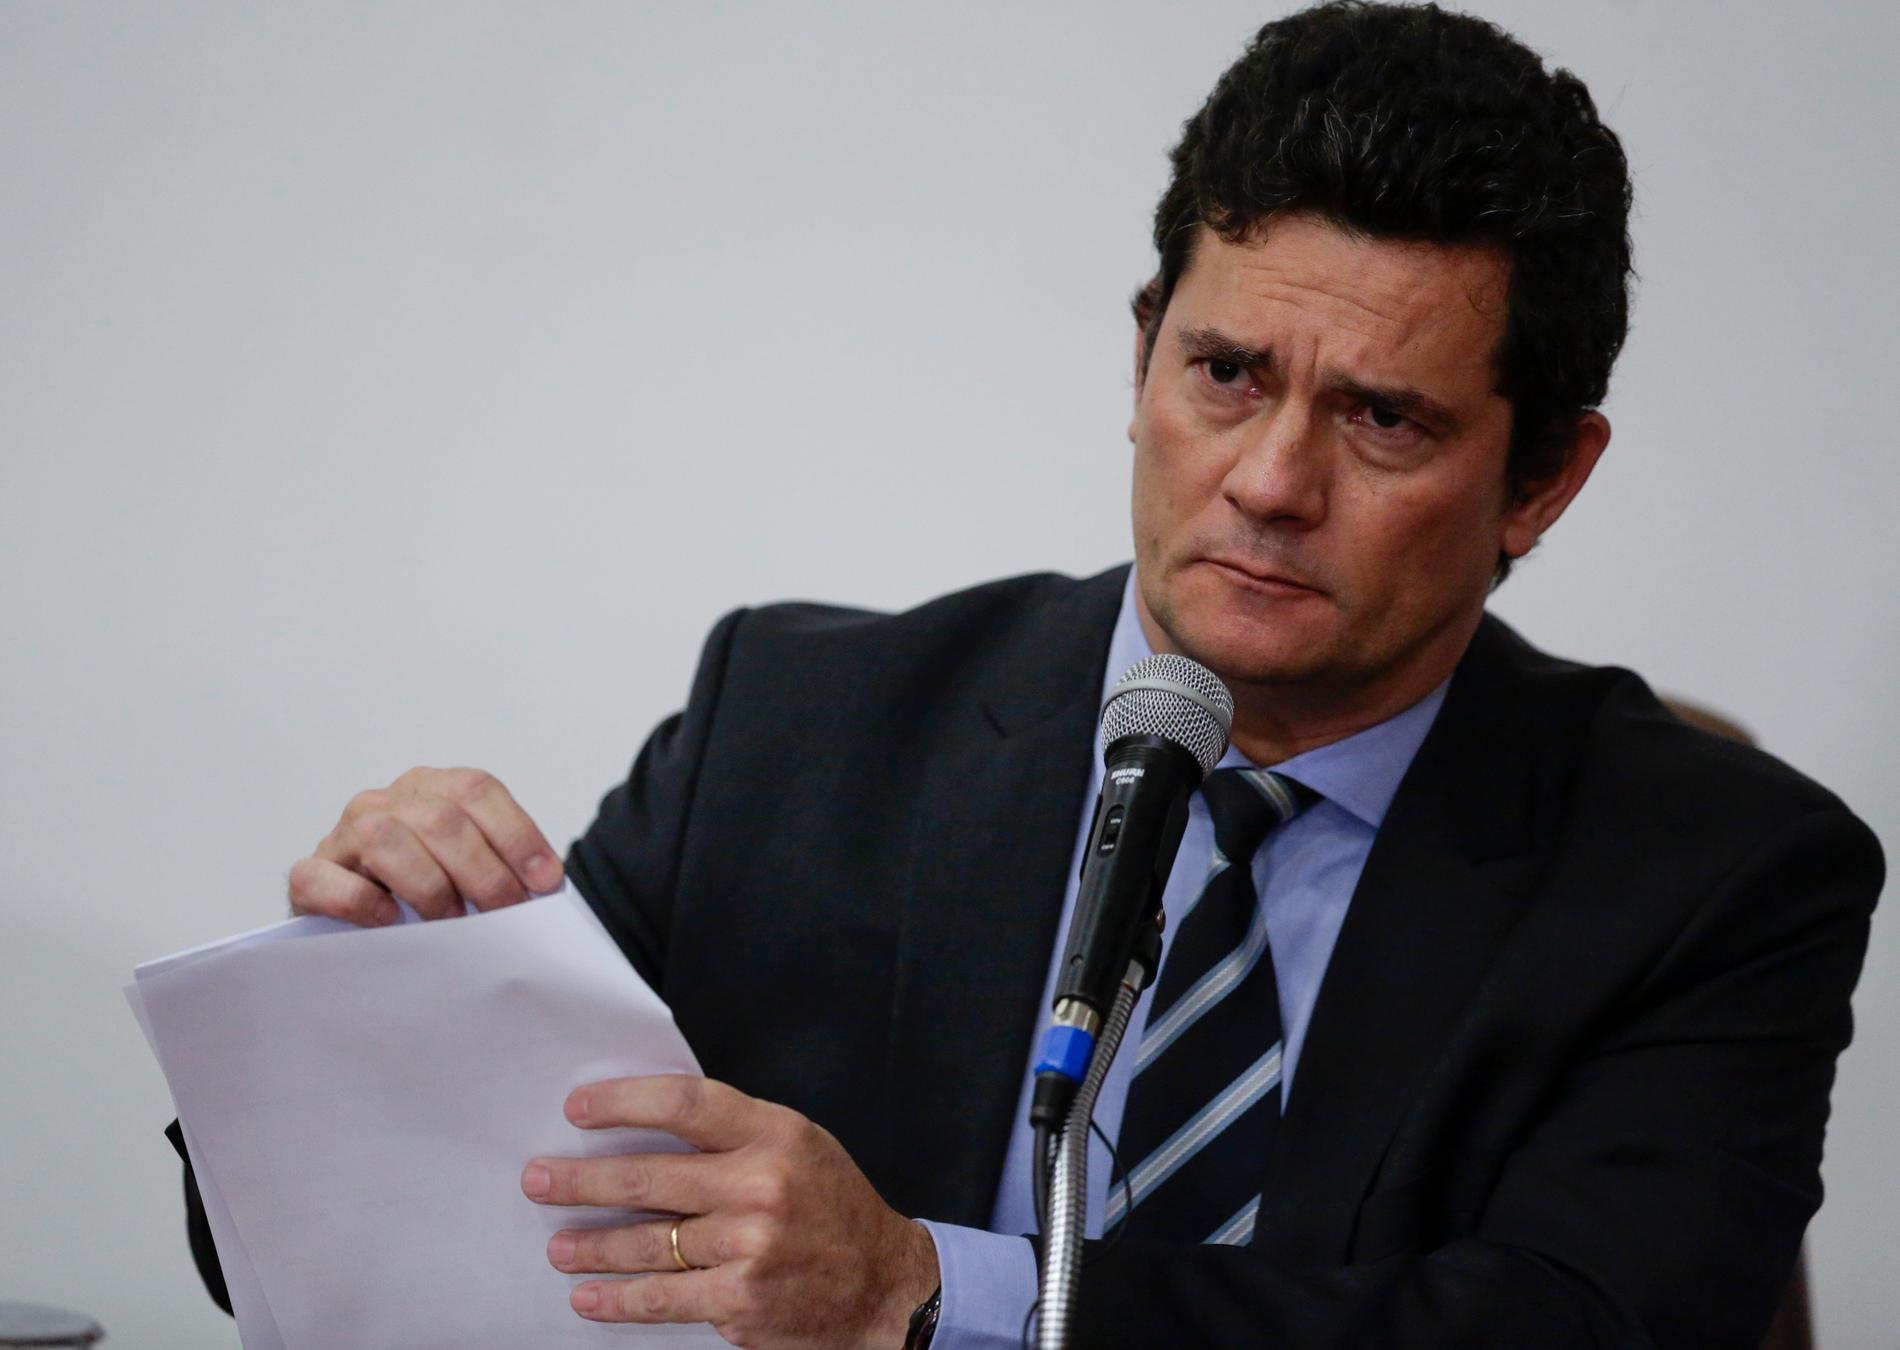 Brasiliens justitieminister Sérgio Moro meddelade att han avgår vid en presskonferens på fredagen.